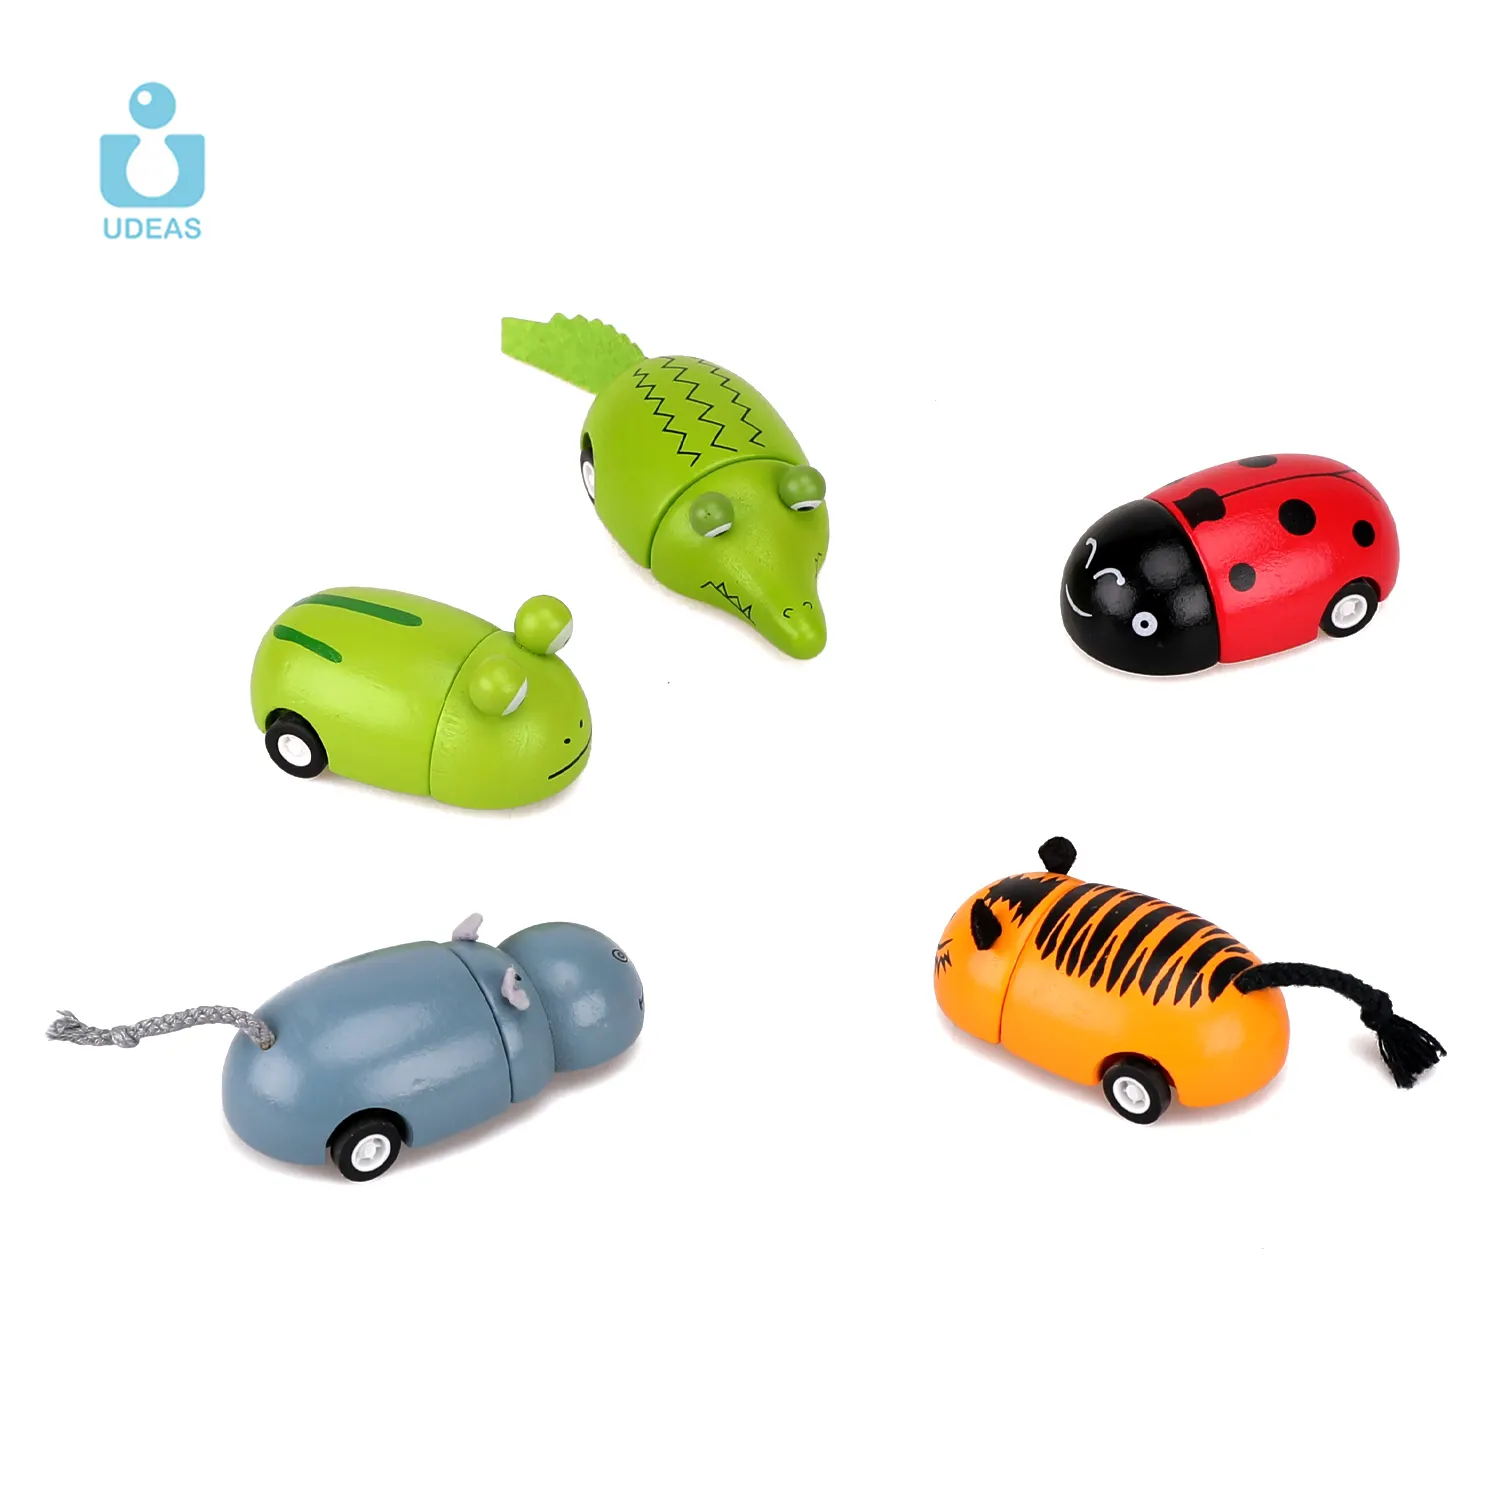 UDEAS 2023 Nouveau Offre Spéciale Petite capsule de dessin animé Jouets en gros en bois Animal Pull Back Toy Car